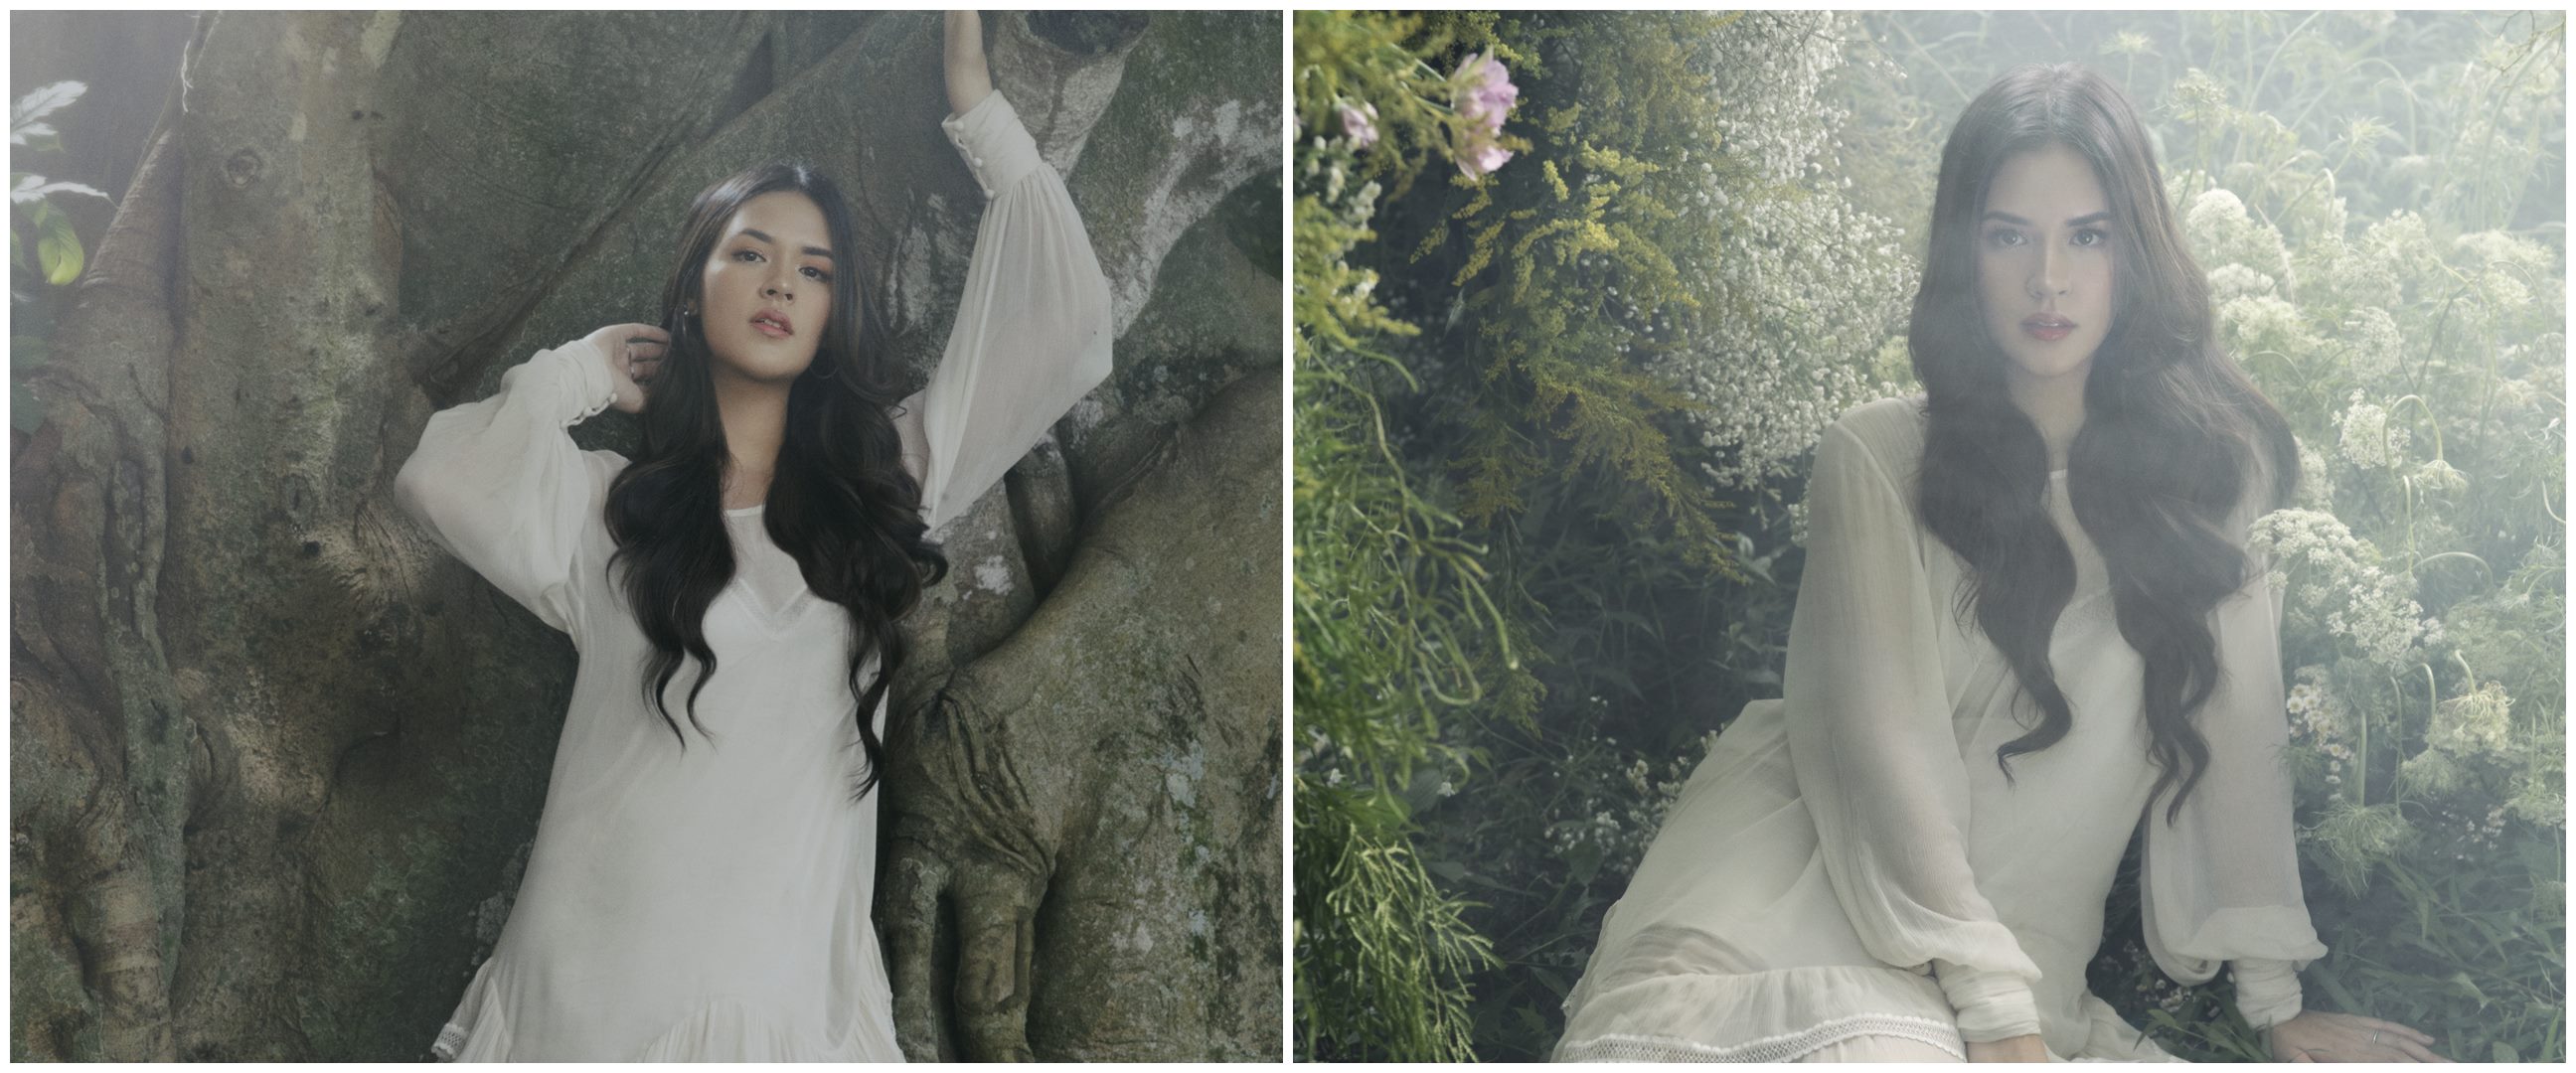 Sambut peluncuran album baru, Raisa rilis single Cinta Sederhana